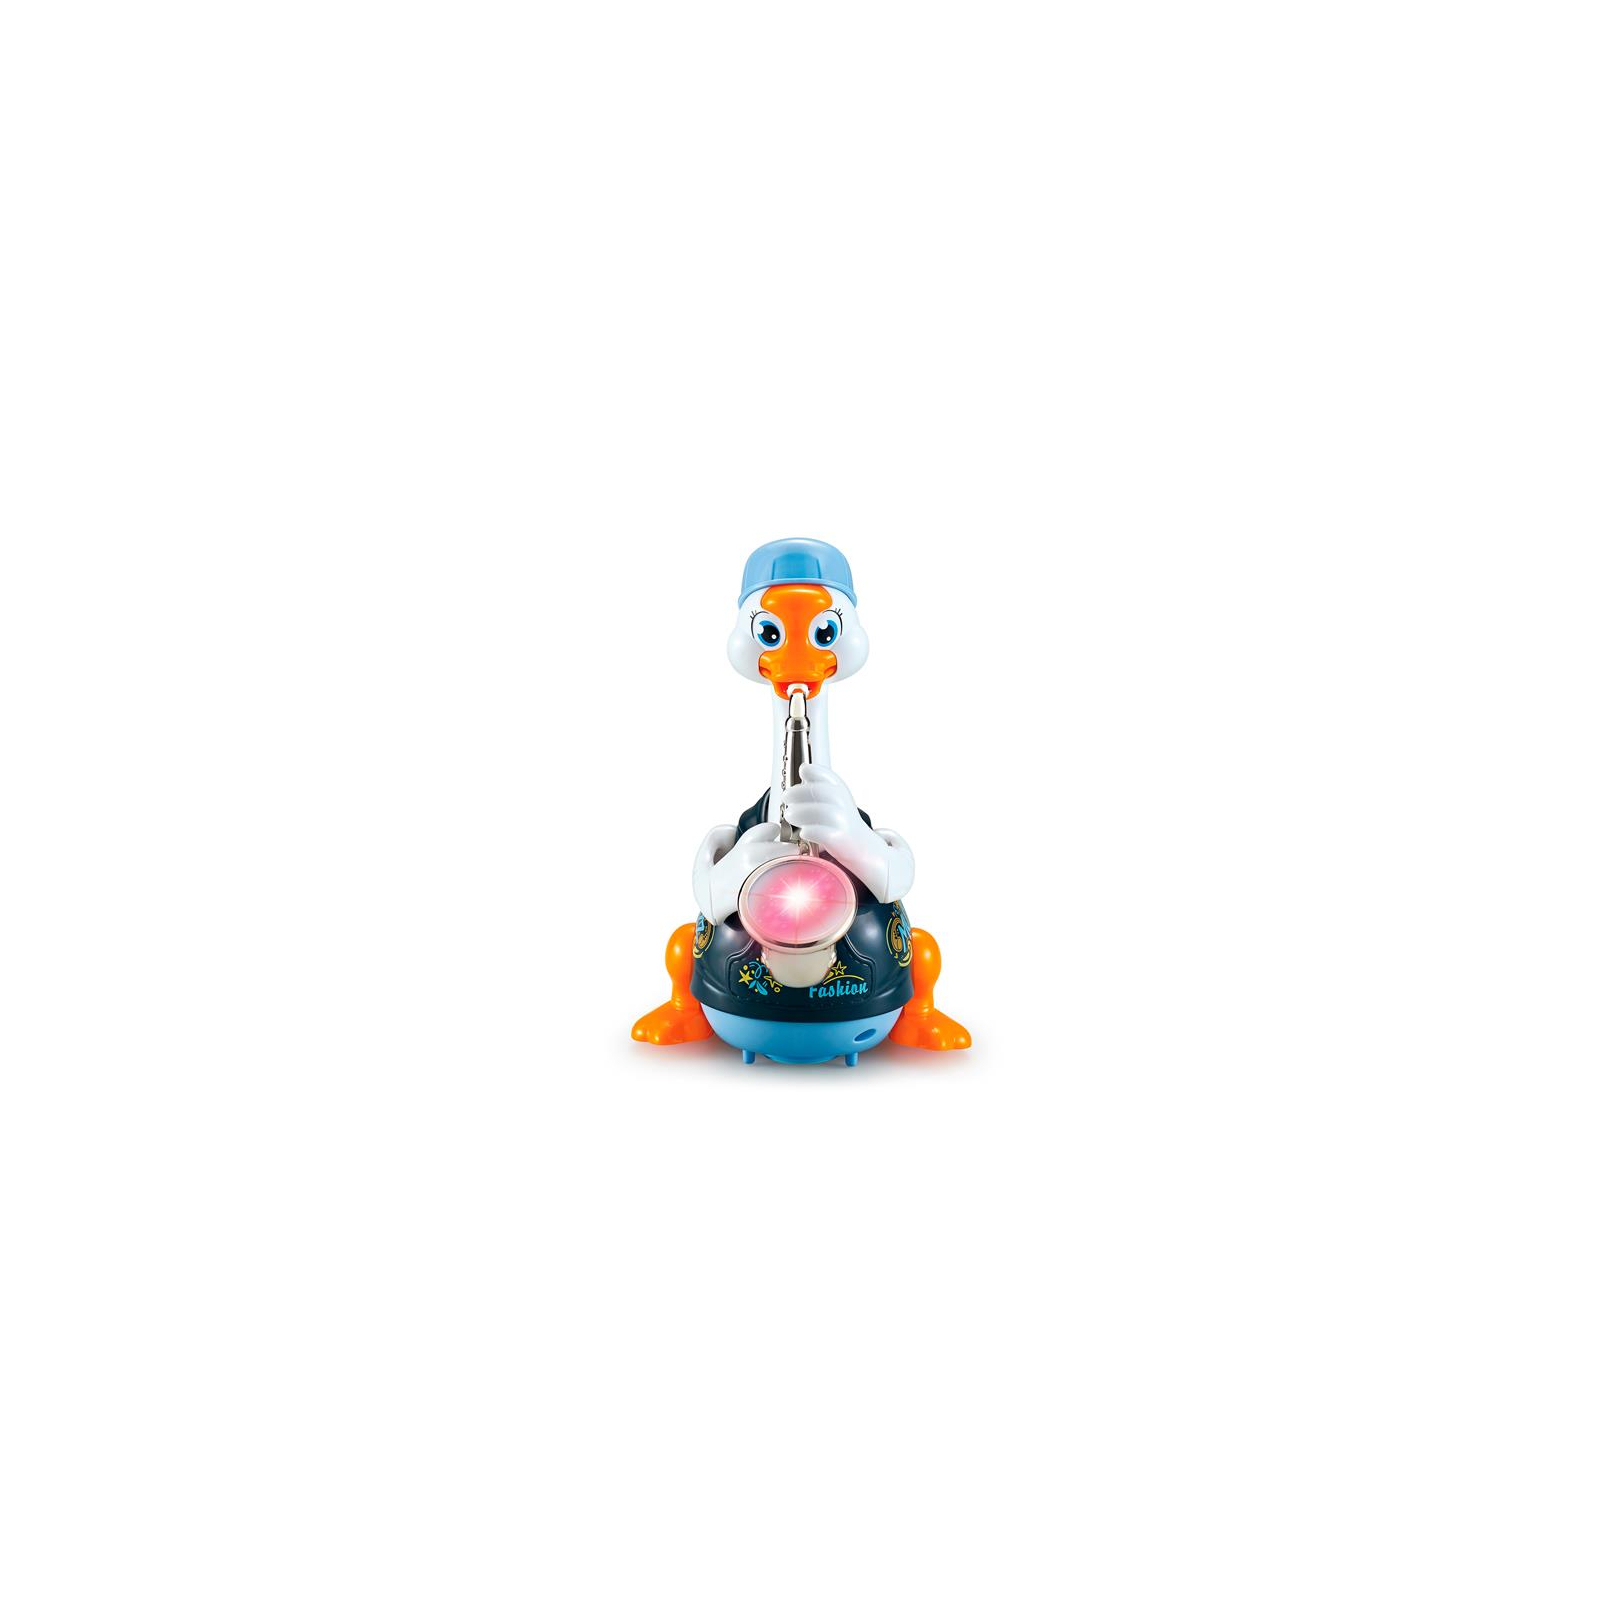 Развивающая игрушка Hola Toys Гусь-саксофонист, синий (6111-blue) изображение 2